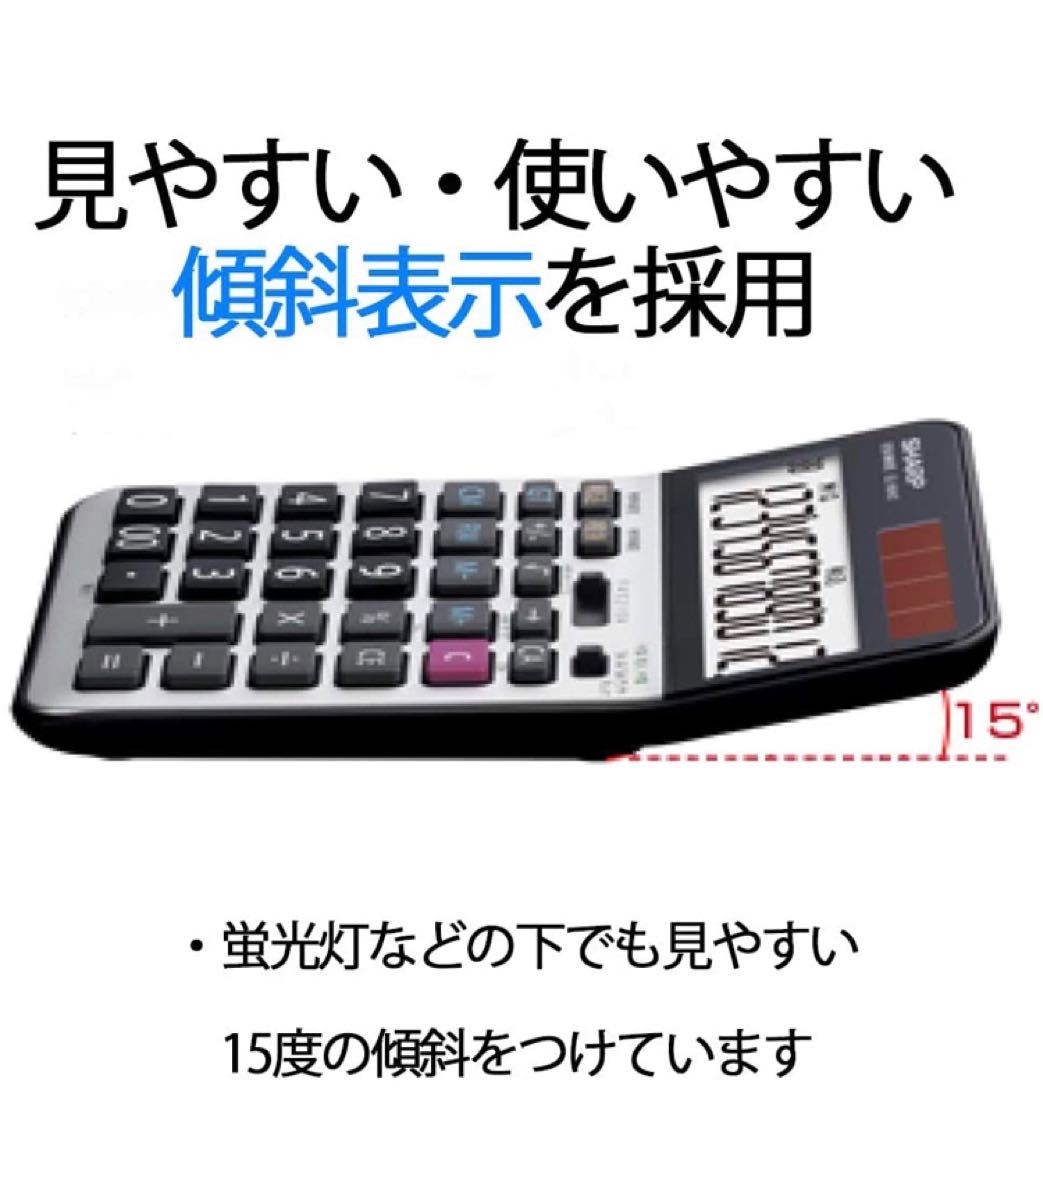 シャープ 実務電卓 ナイスサイズタイプ EL-N942X